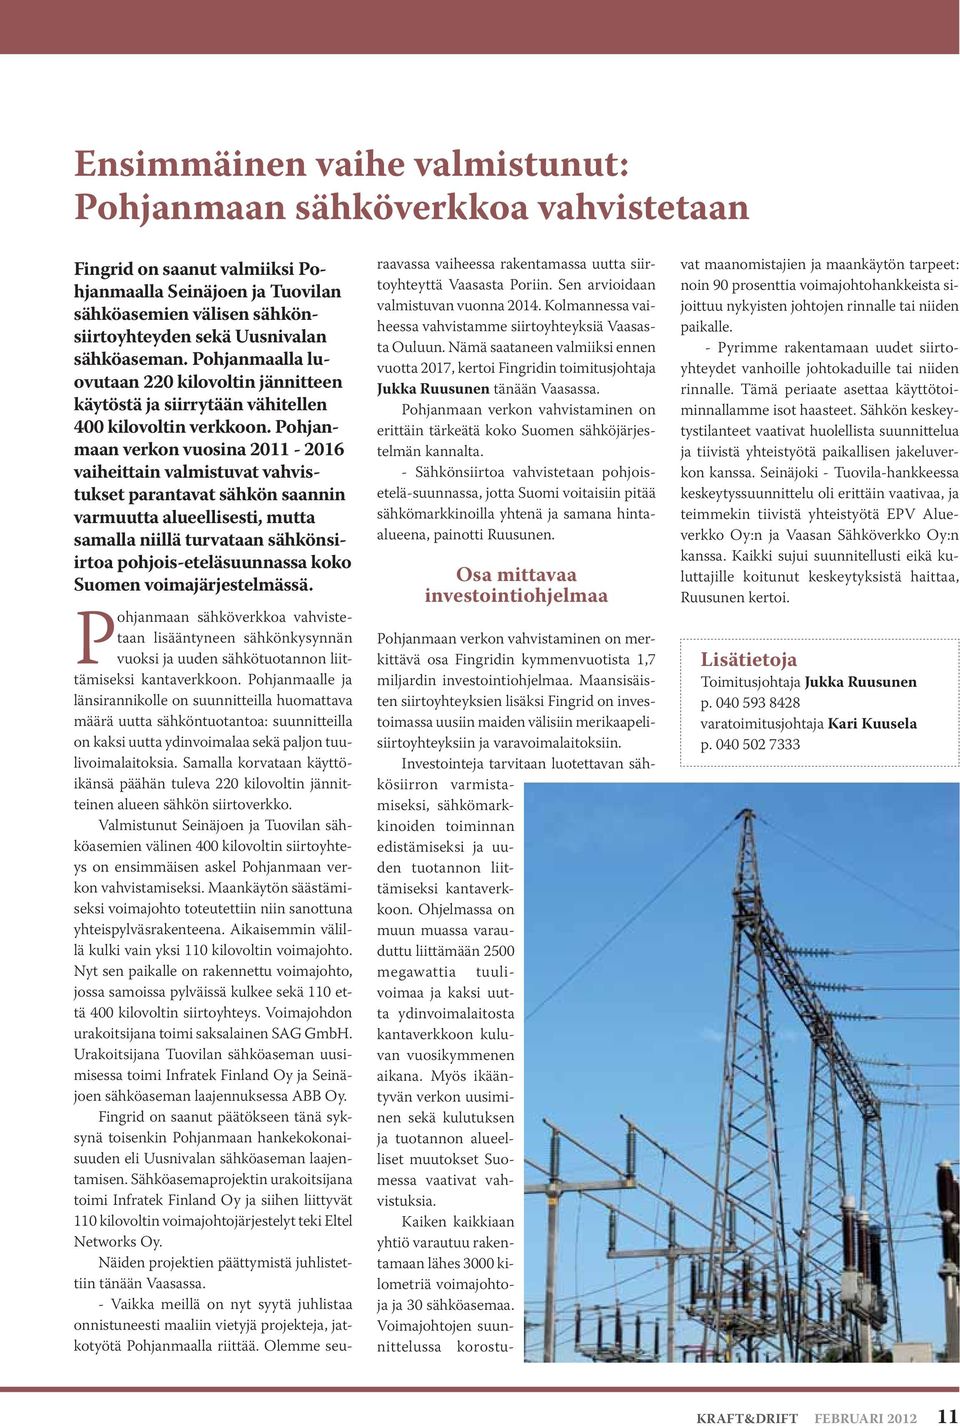 Pohjanmaan verkon vuosina 2011-2016 vaiheittain valmistuvat vahvistukset parantavat sähkön saannin varmuutta alueellisesti, mutta samalla niillä turvataan sähkönsiirtoa pohjois-eteläsuunnassa koko